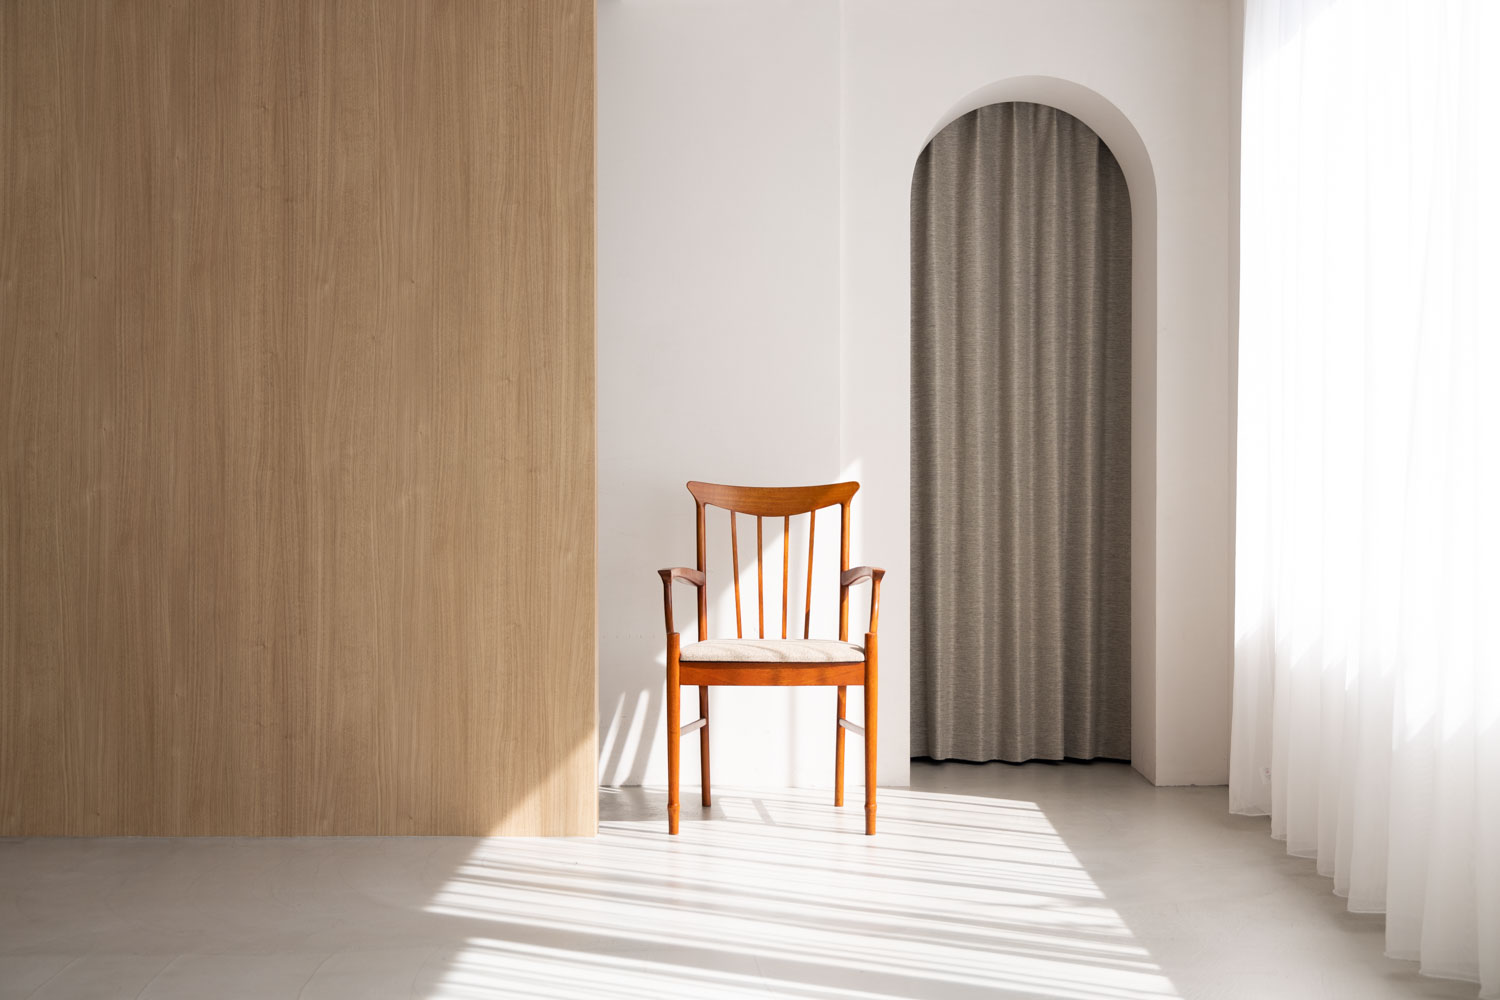 アーチ壁がある明るい空間に、木製の椅子が置かれた写真